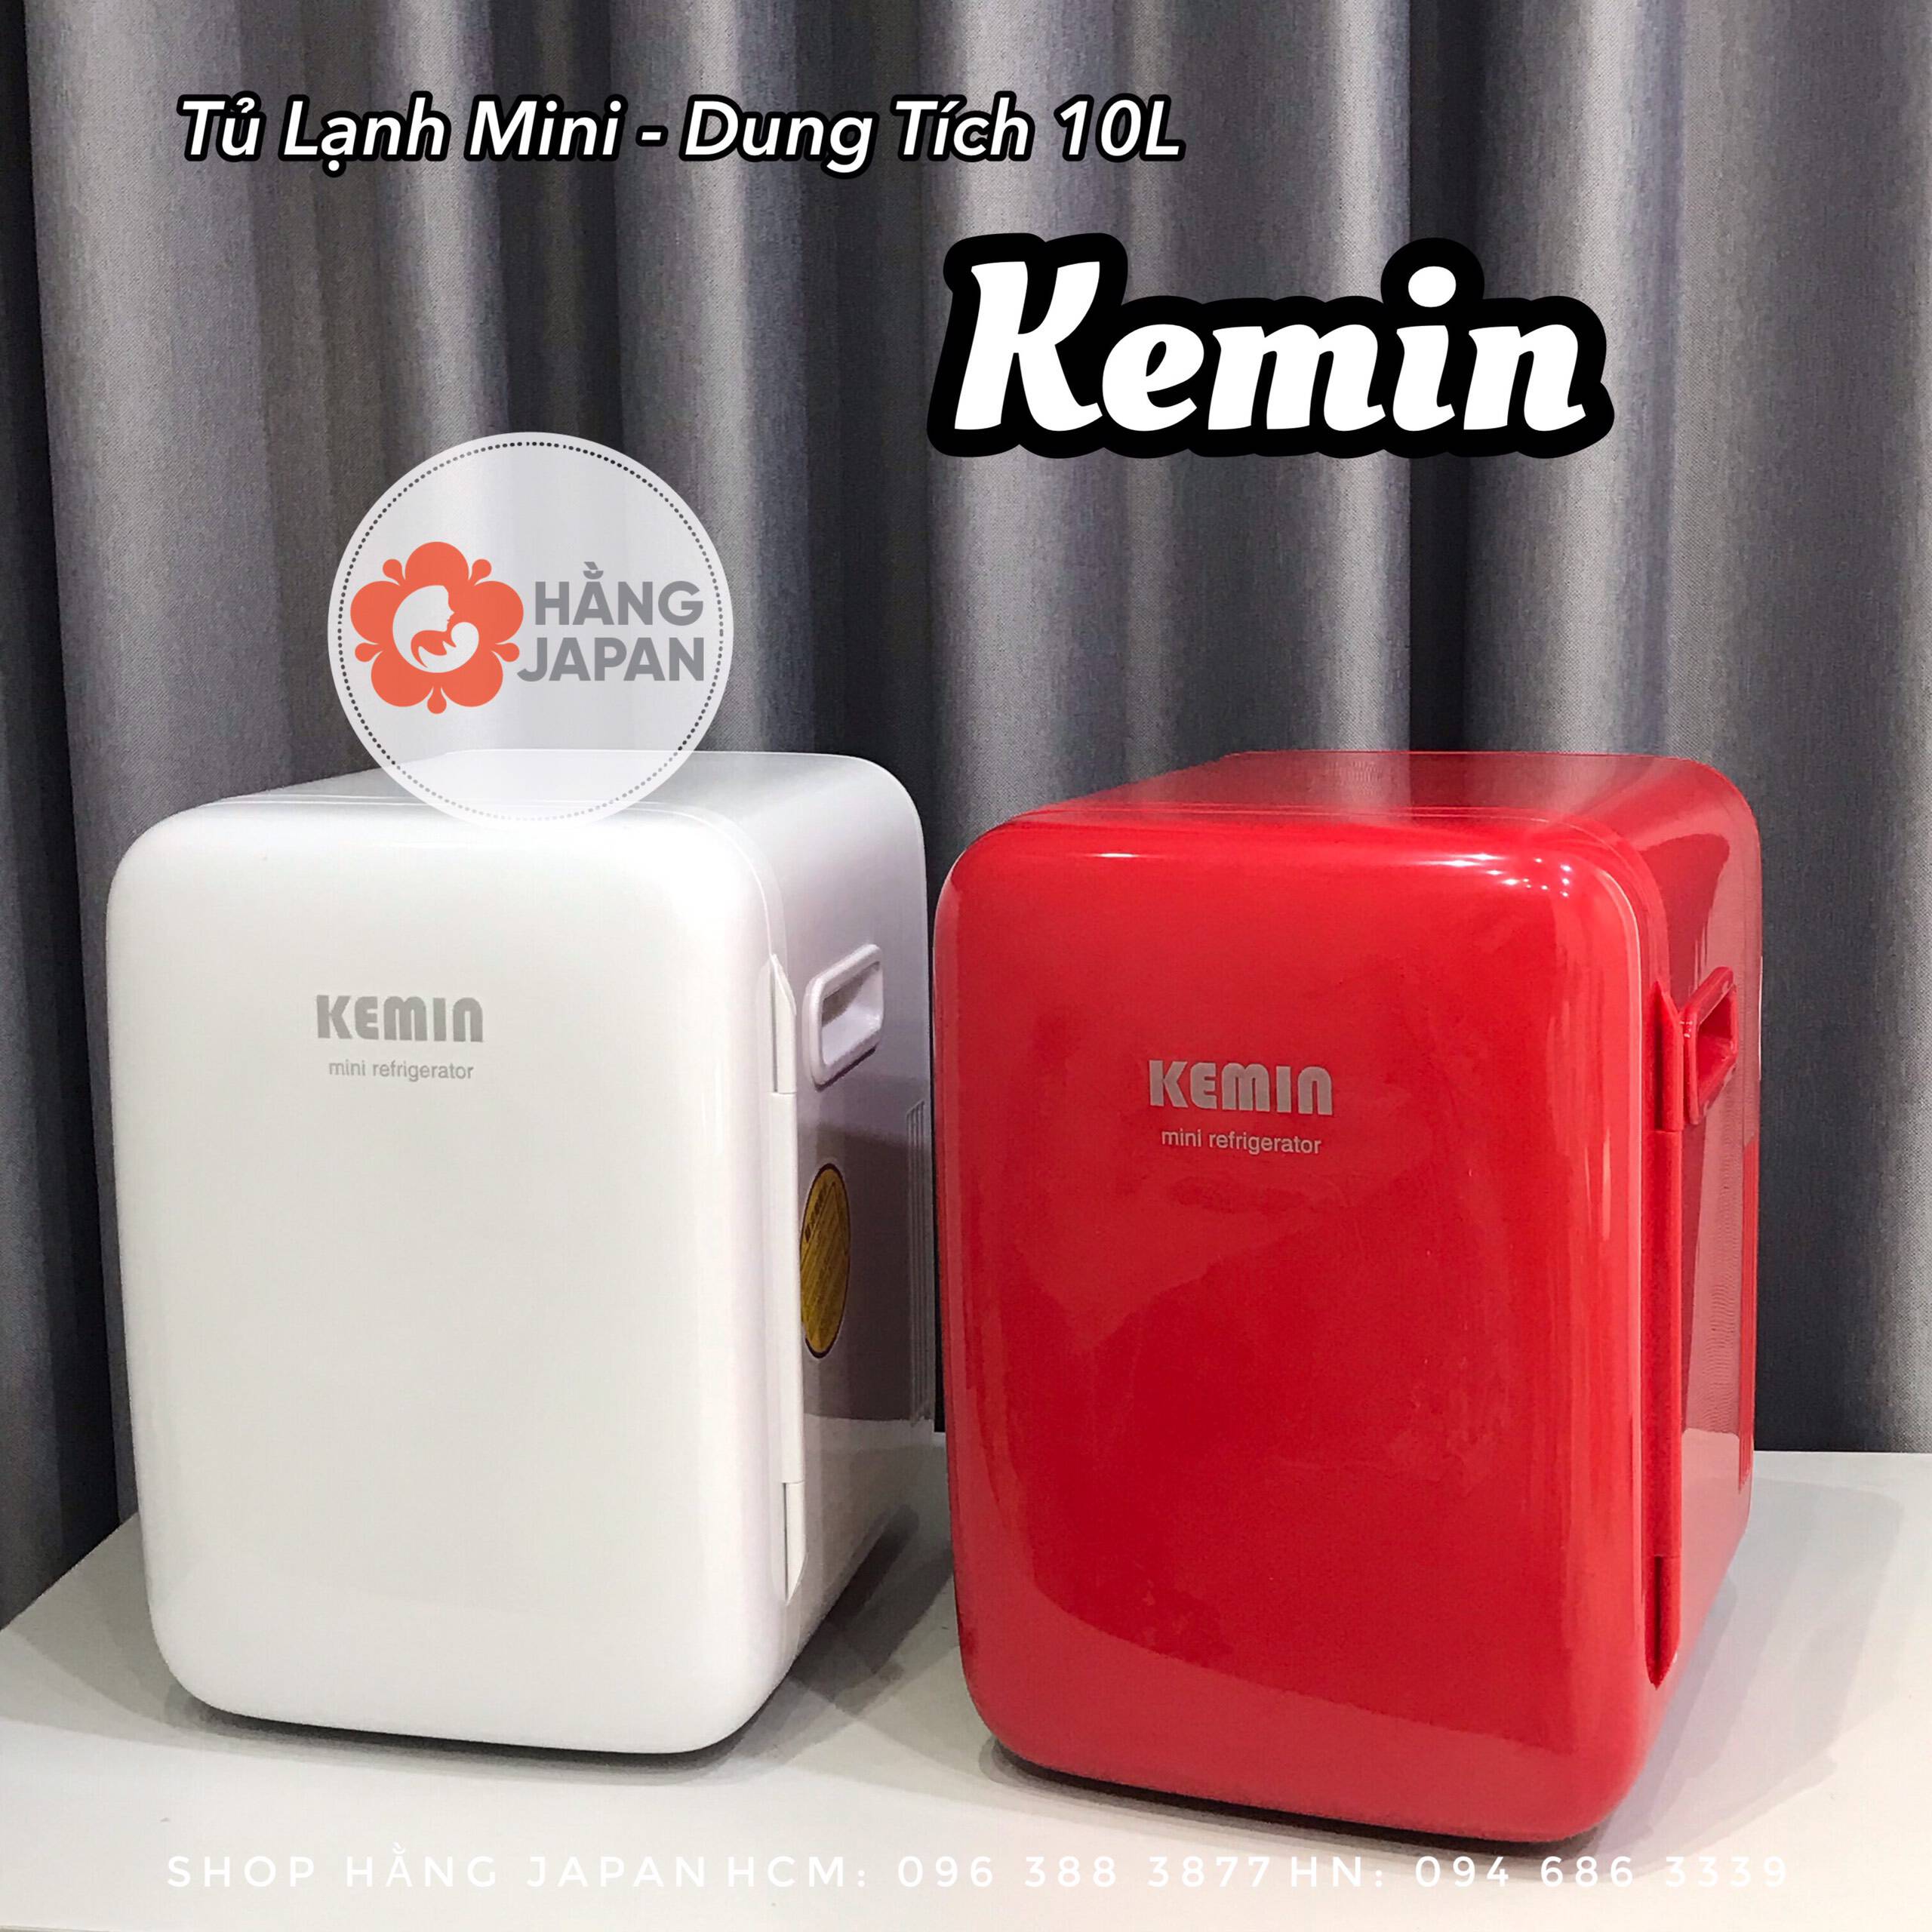 Tủ lạnh mini Kemin 10L - Dùng trên cả ôtô và trong nhà